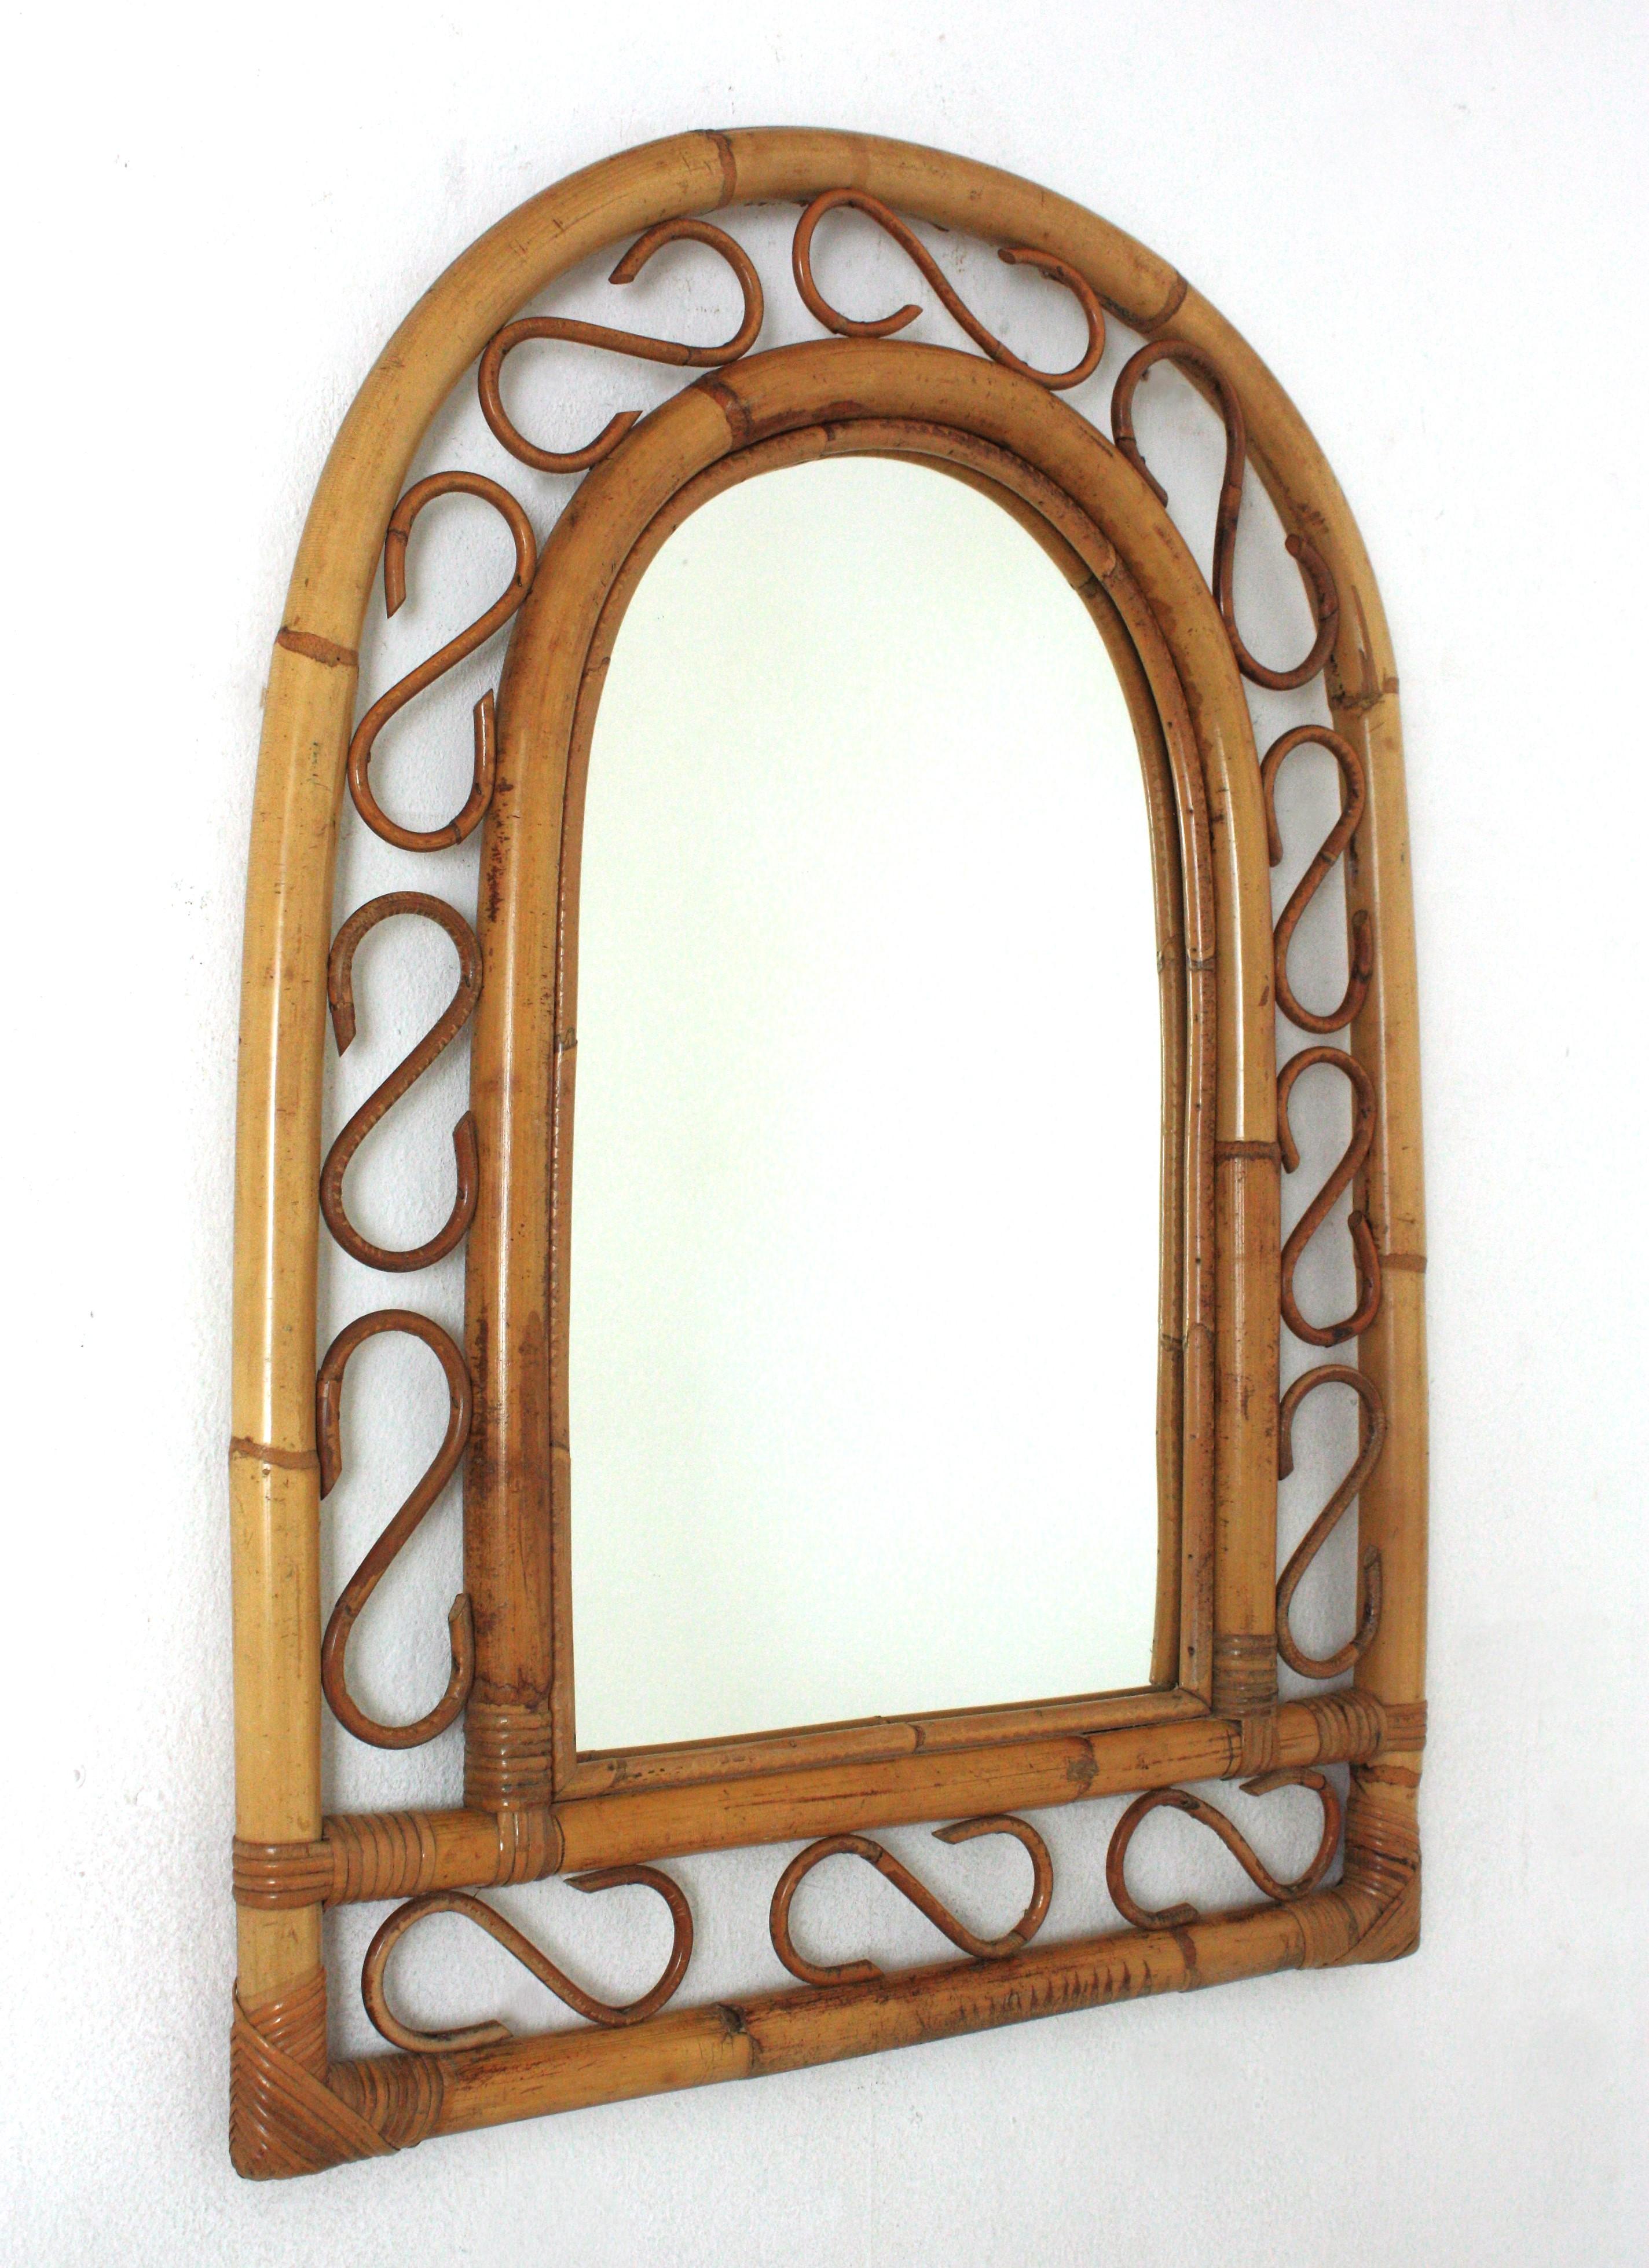 Miroir en bambou et en rotin fabriqué à la main dans le style Franco Albini de la modernité du milieu du siècle, avec un sommet arqué.
Ce miroir présente un double cadre en bambou avec des détails décoratifs en rotin entre les cannes de bambou.
Ce